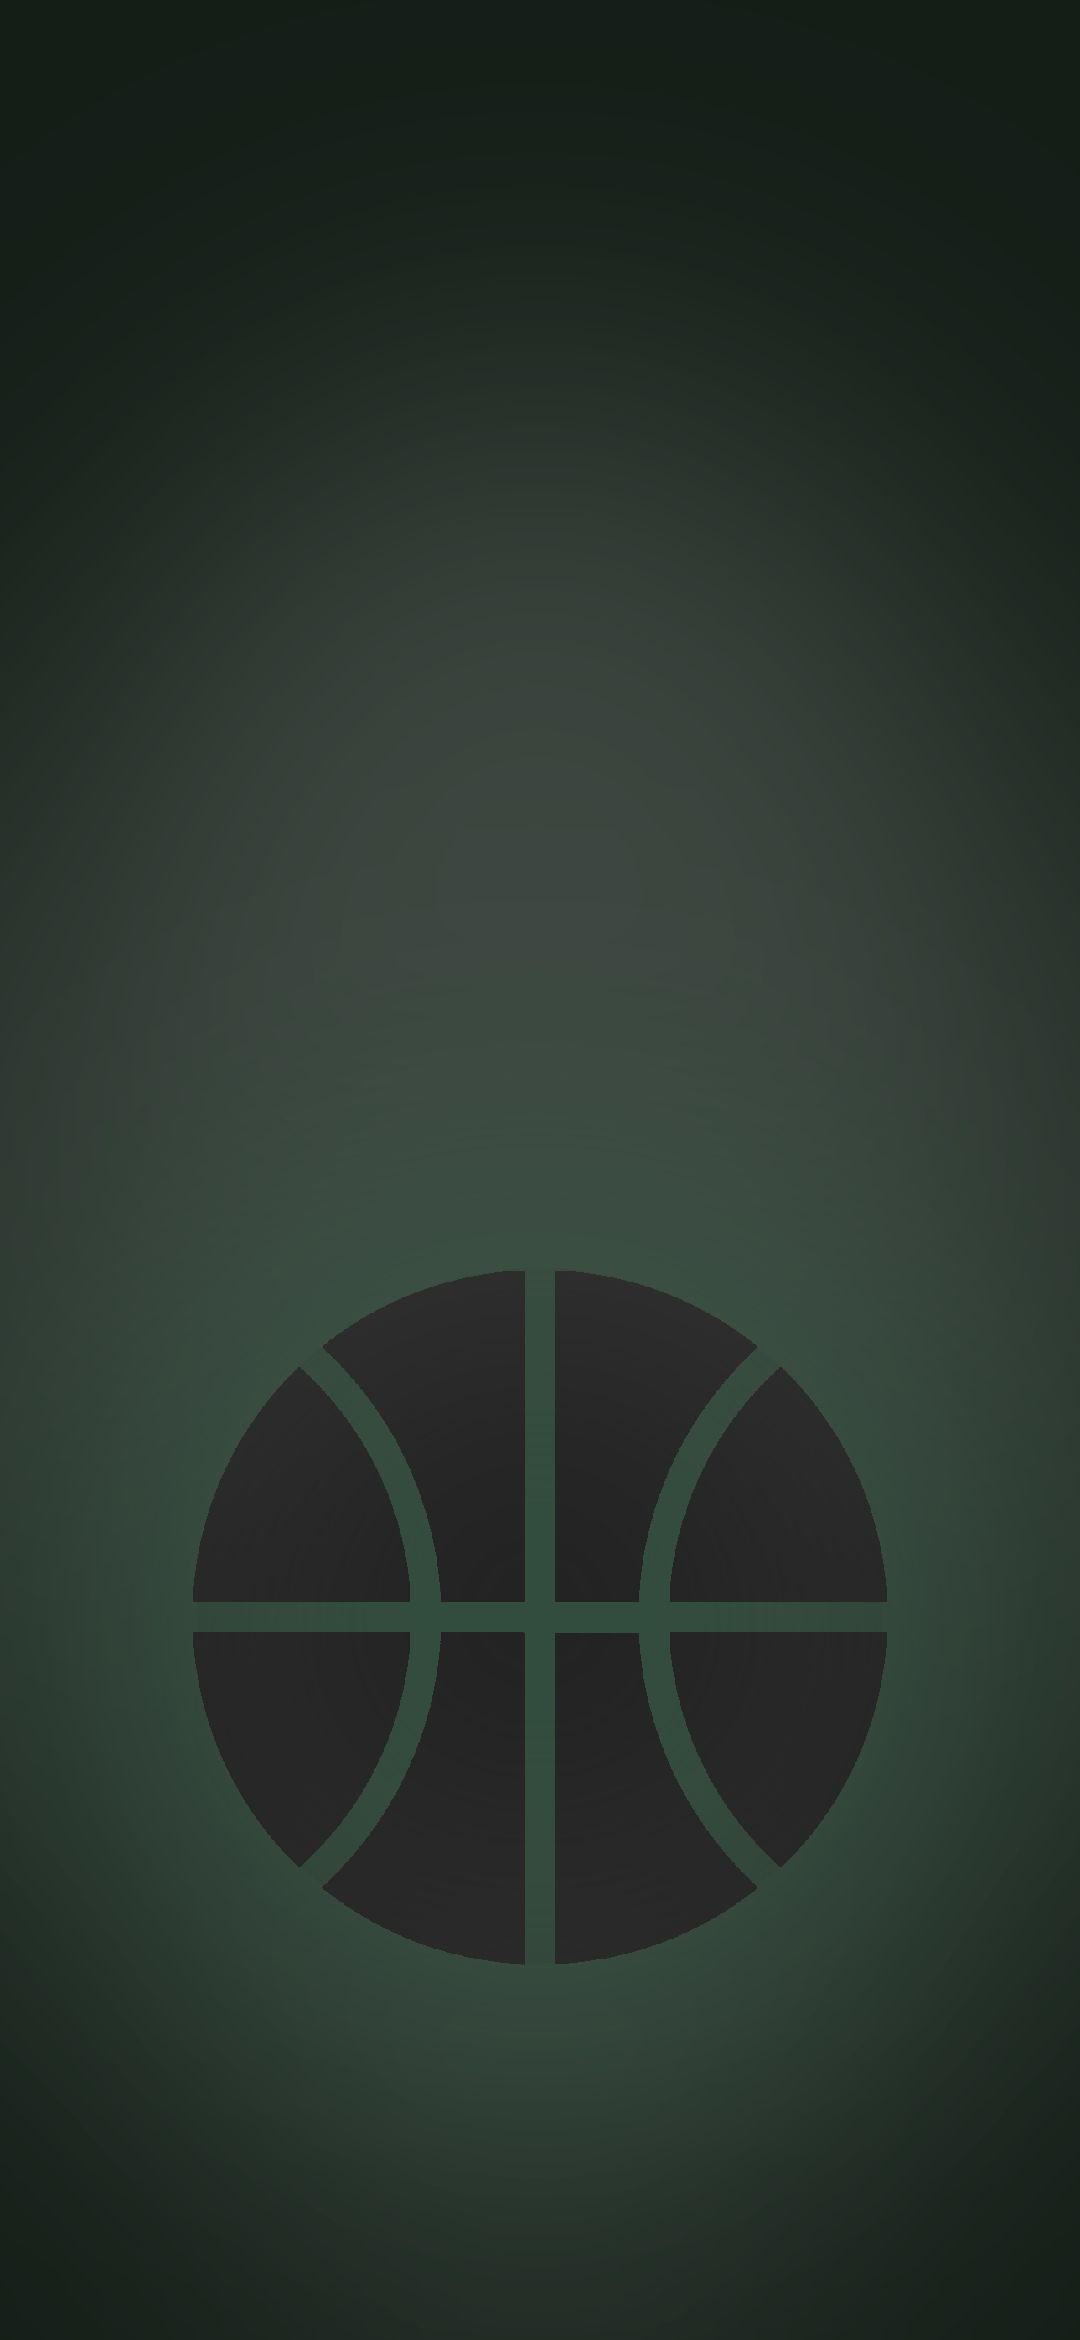 バスケのボール 緑の背景 Google Pixel 4a Android 壁紙 待ち受け スマラン